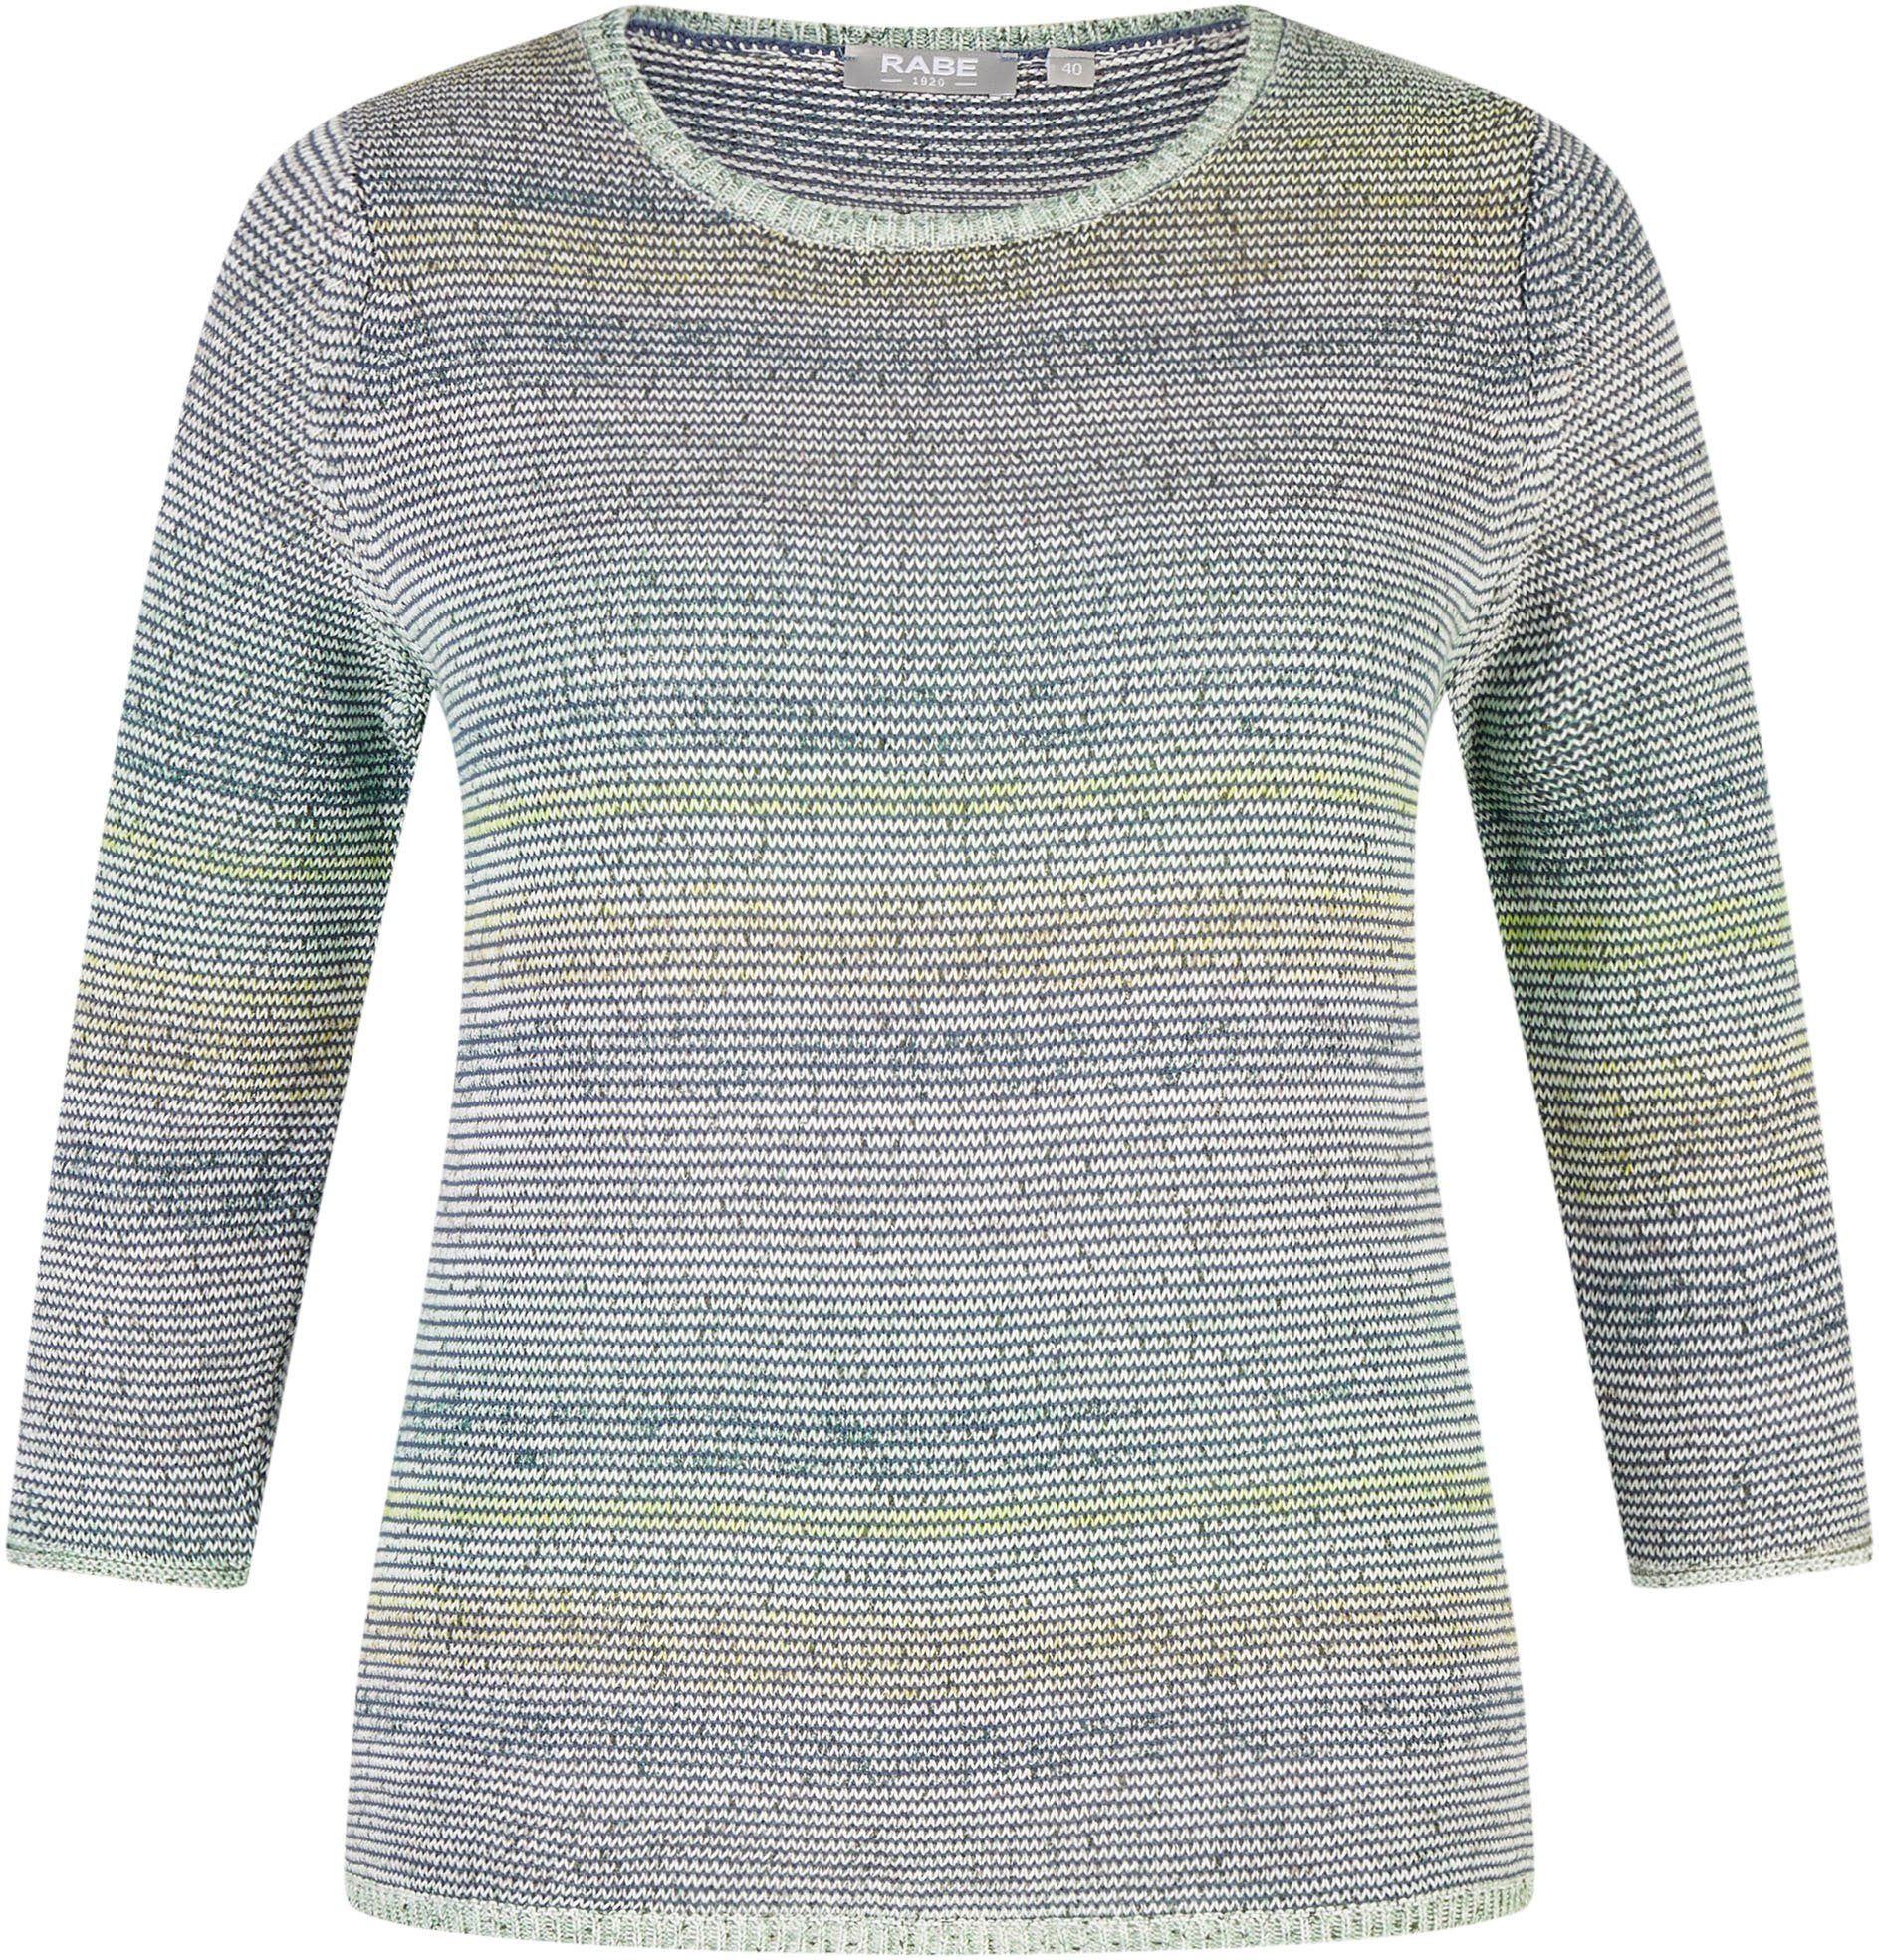 Rabe Pullover für Damen online kaufen | OTTO